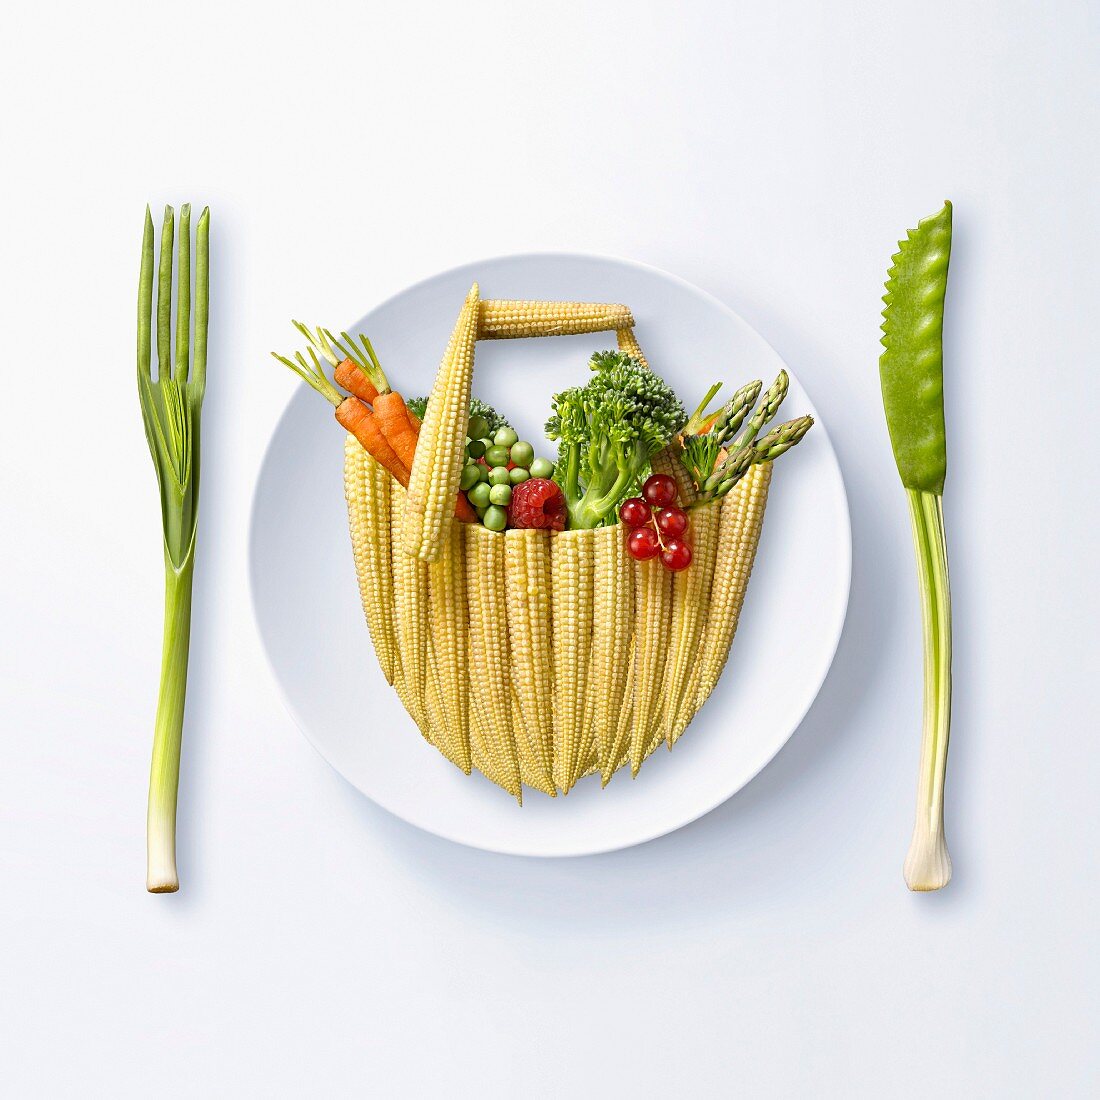 Obst und Gemüse in Form eines Einkaufskorbs auf Teller, daneben Besteck aus Gemüse (Symbolbild)